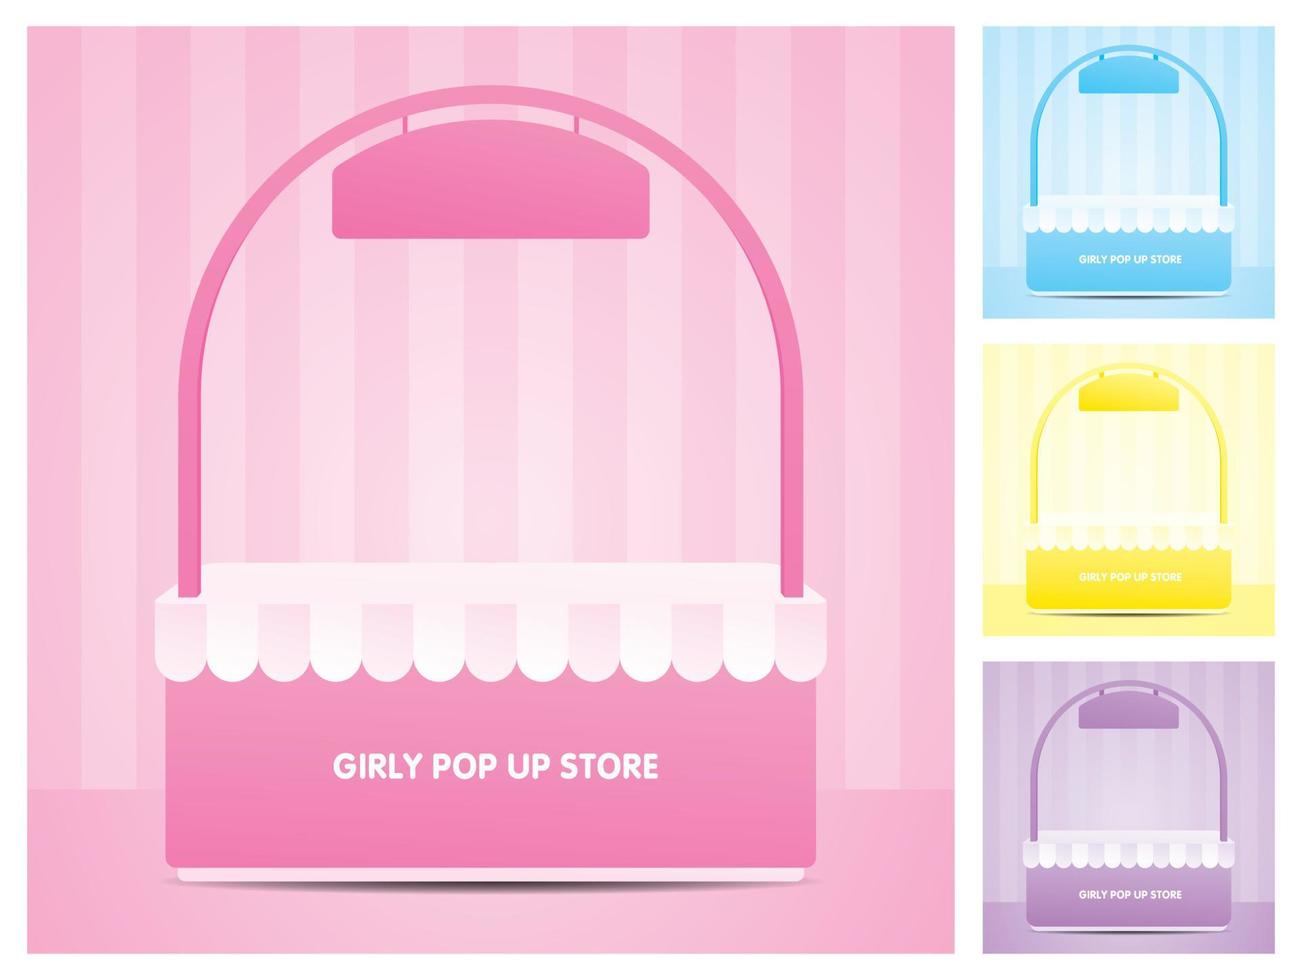 girly pop up store avec arche et signe suspendu collection de vecteurs d'illustration 3d sur scène de mur à rayures pastel vecteur